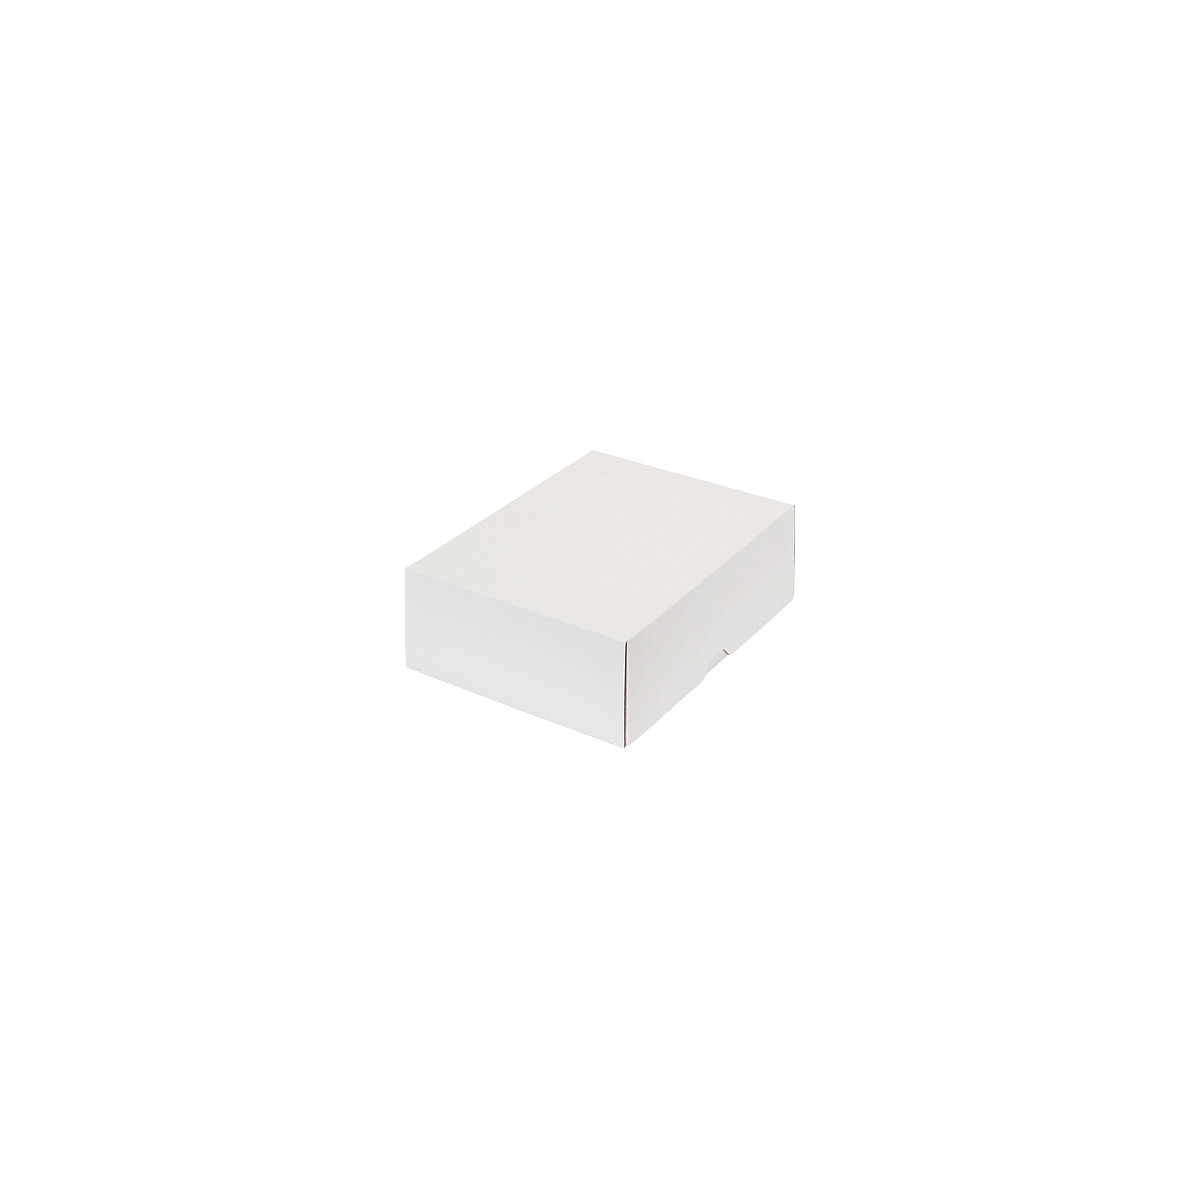 Stülpdeckelkarton, zweiteilig, Innenmaße 252 x 180 x 79 mm, B5, weiß, ab 150 Stk-14